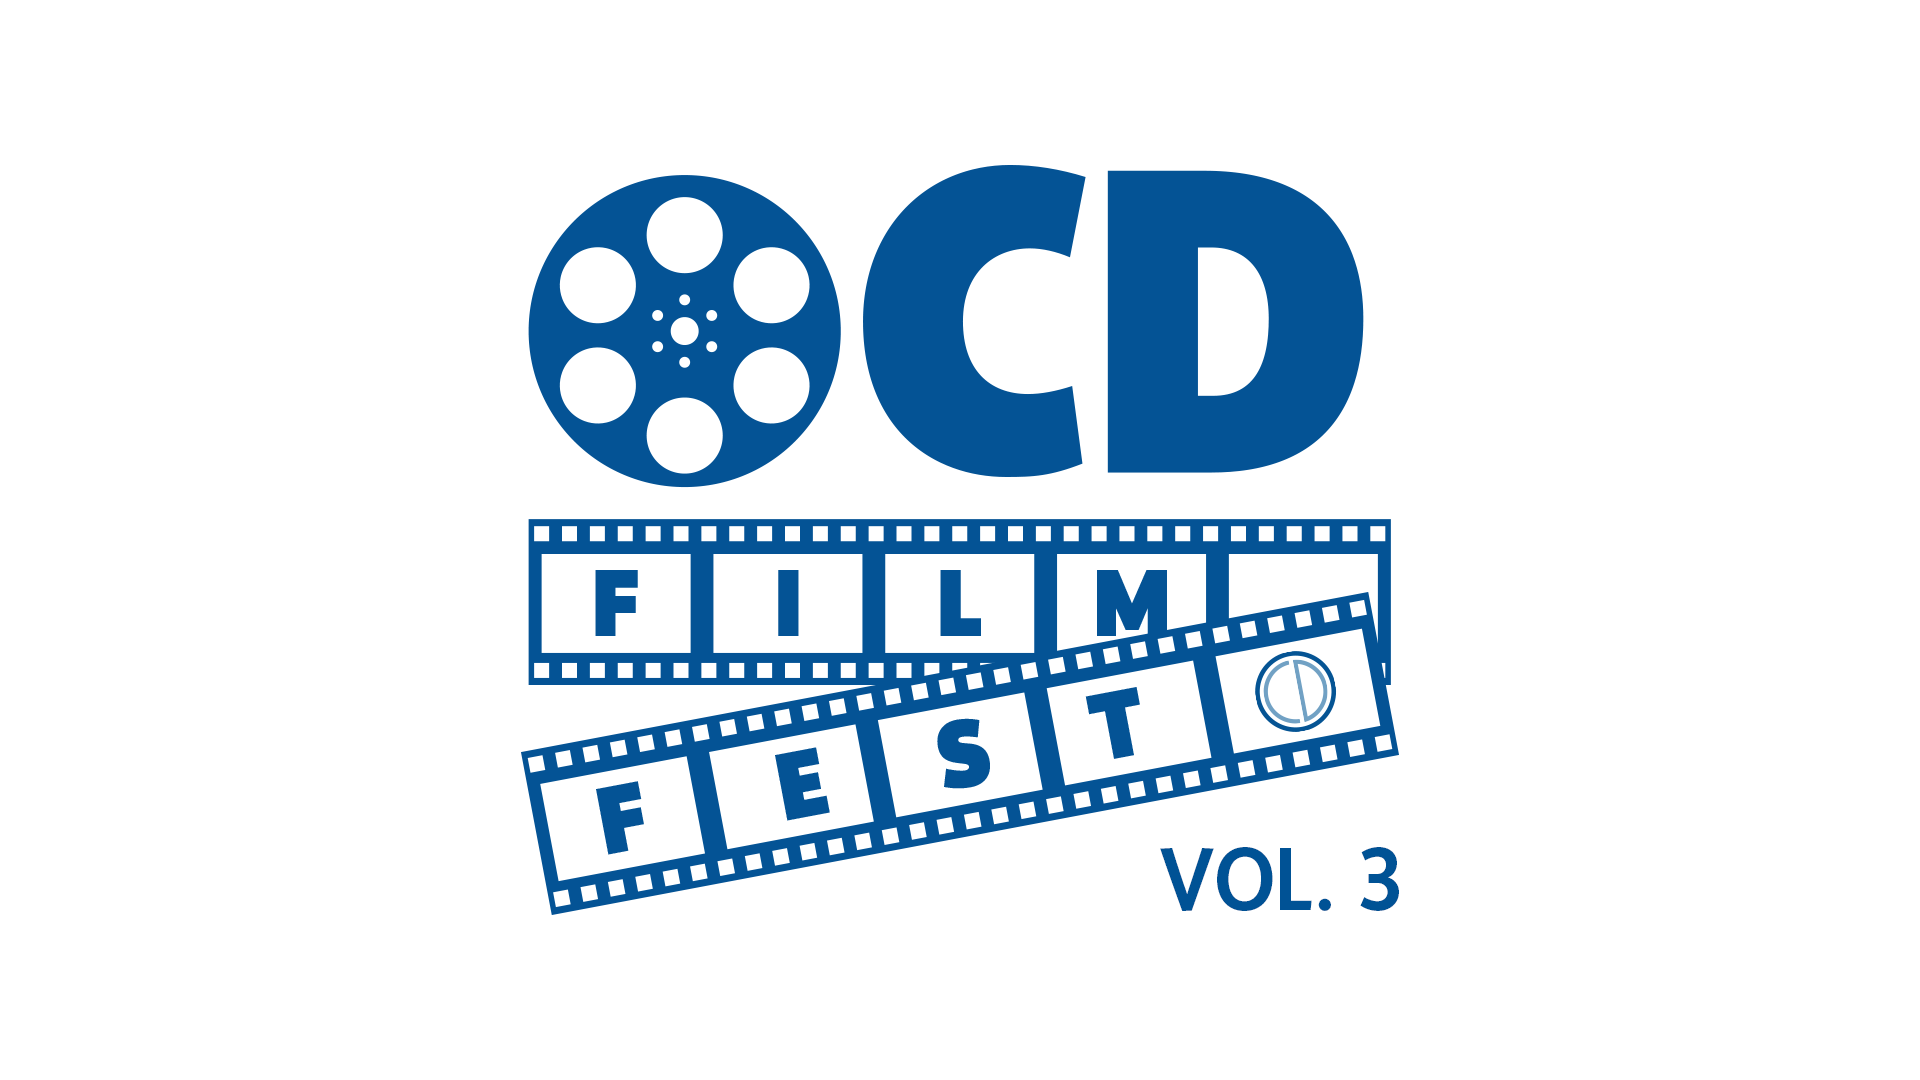 OCD Film Fest Vol. 3 OCD Awareness Week 2023 October 8th - 14th.